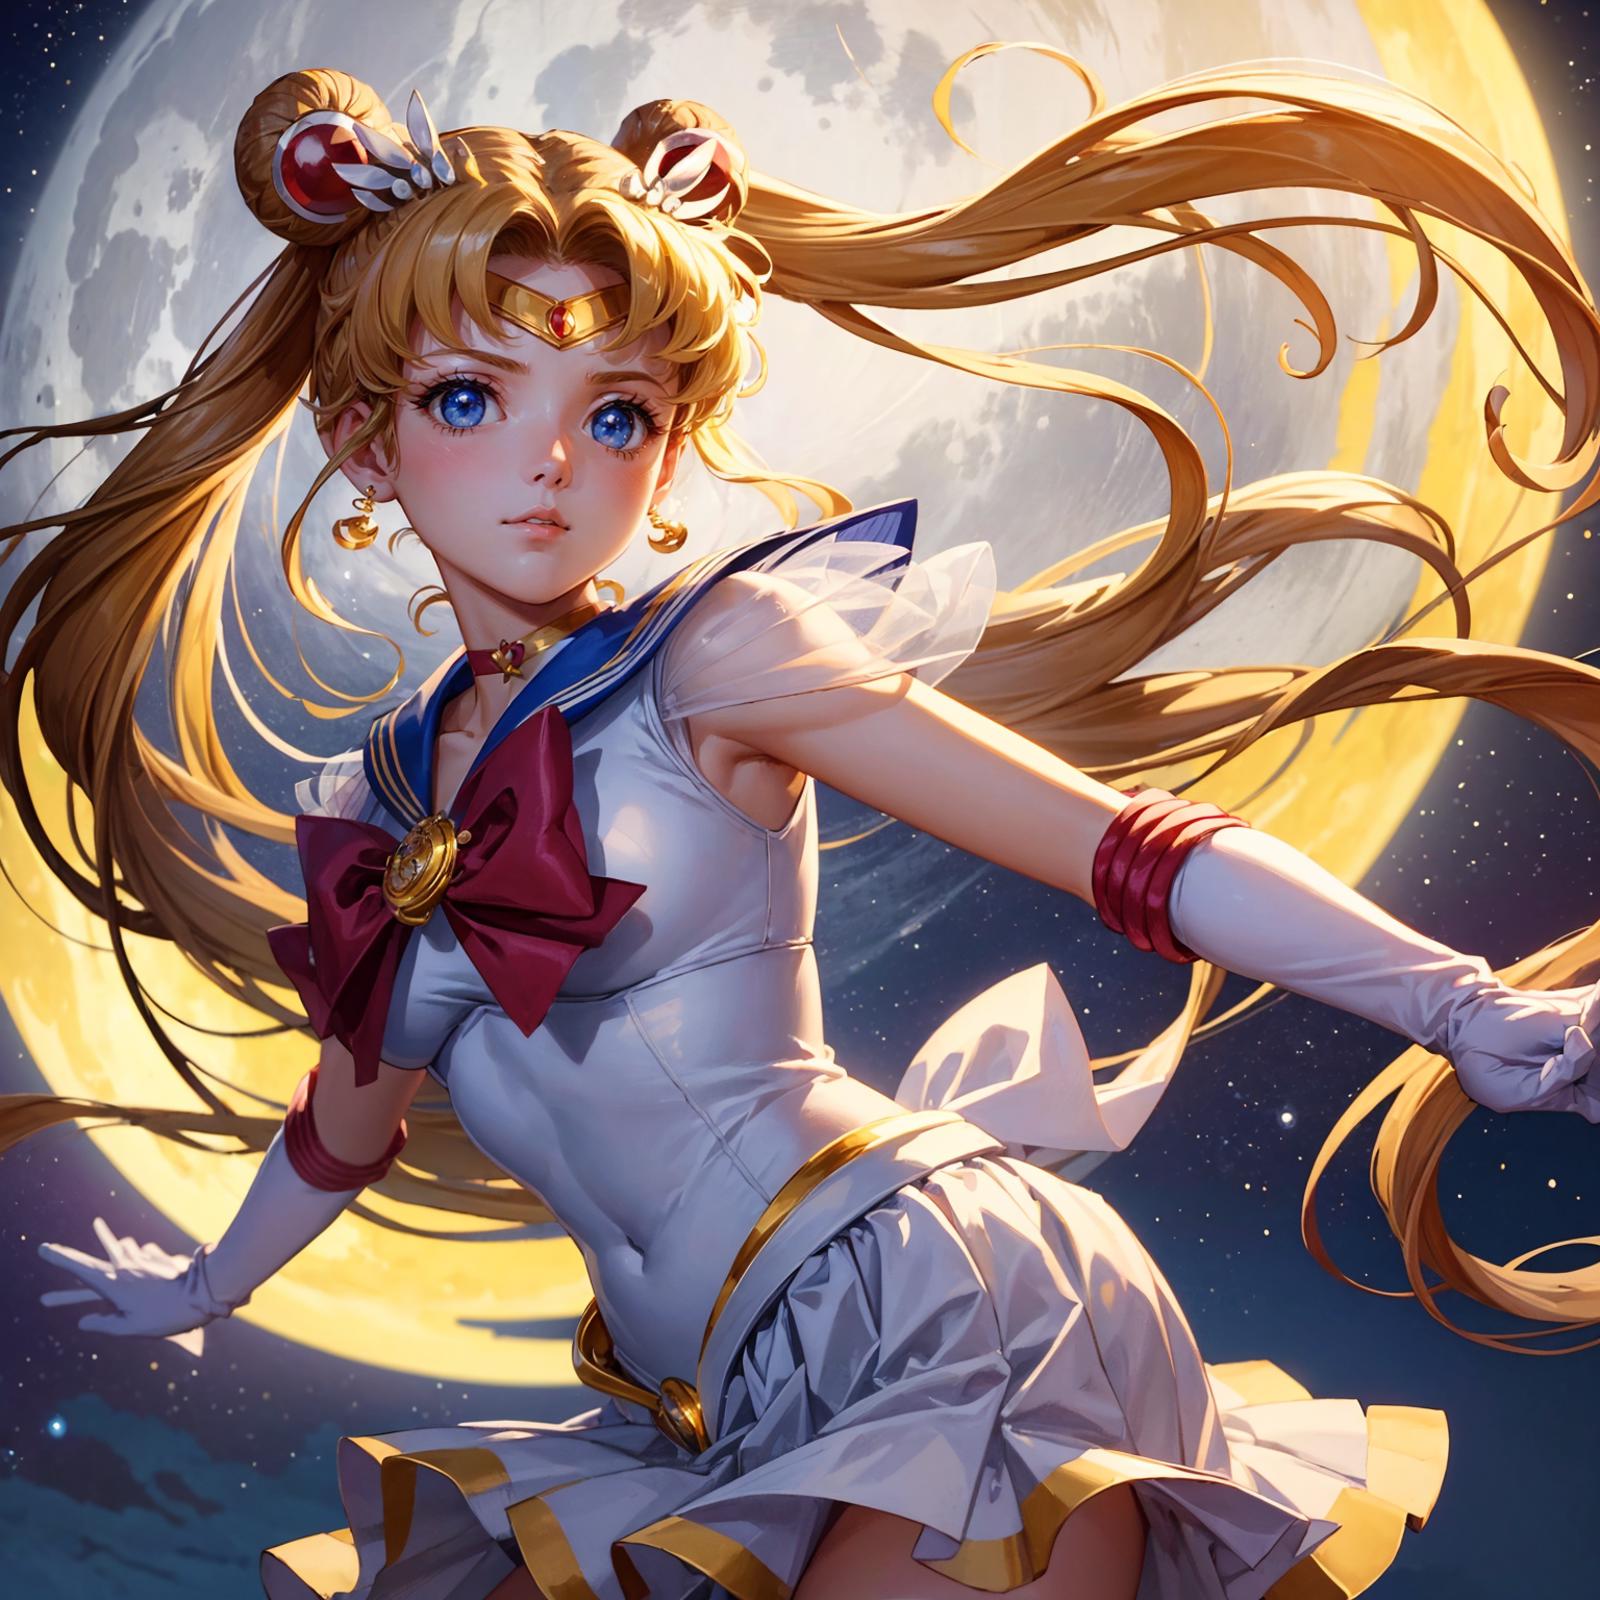 Sailor Moon (Tsukino Usagi) セーラームーン (月野うさぎ) / Sailor Moon image by woodyring123450